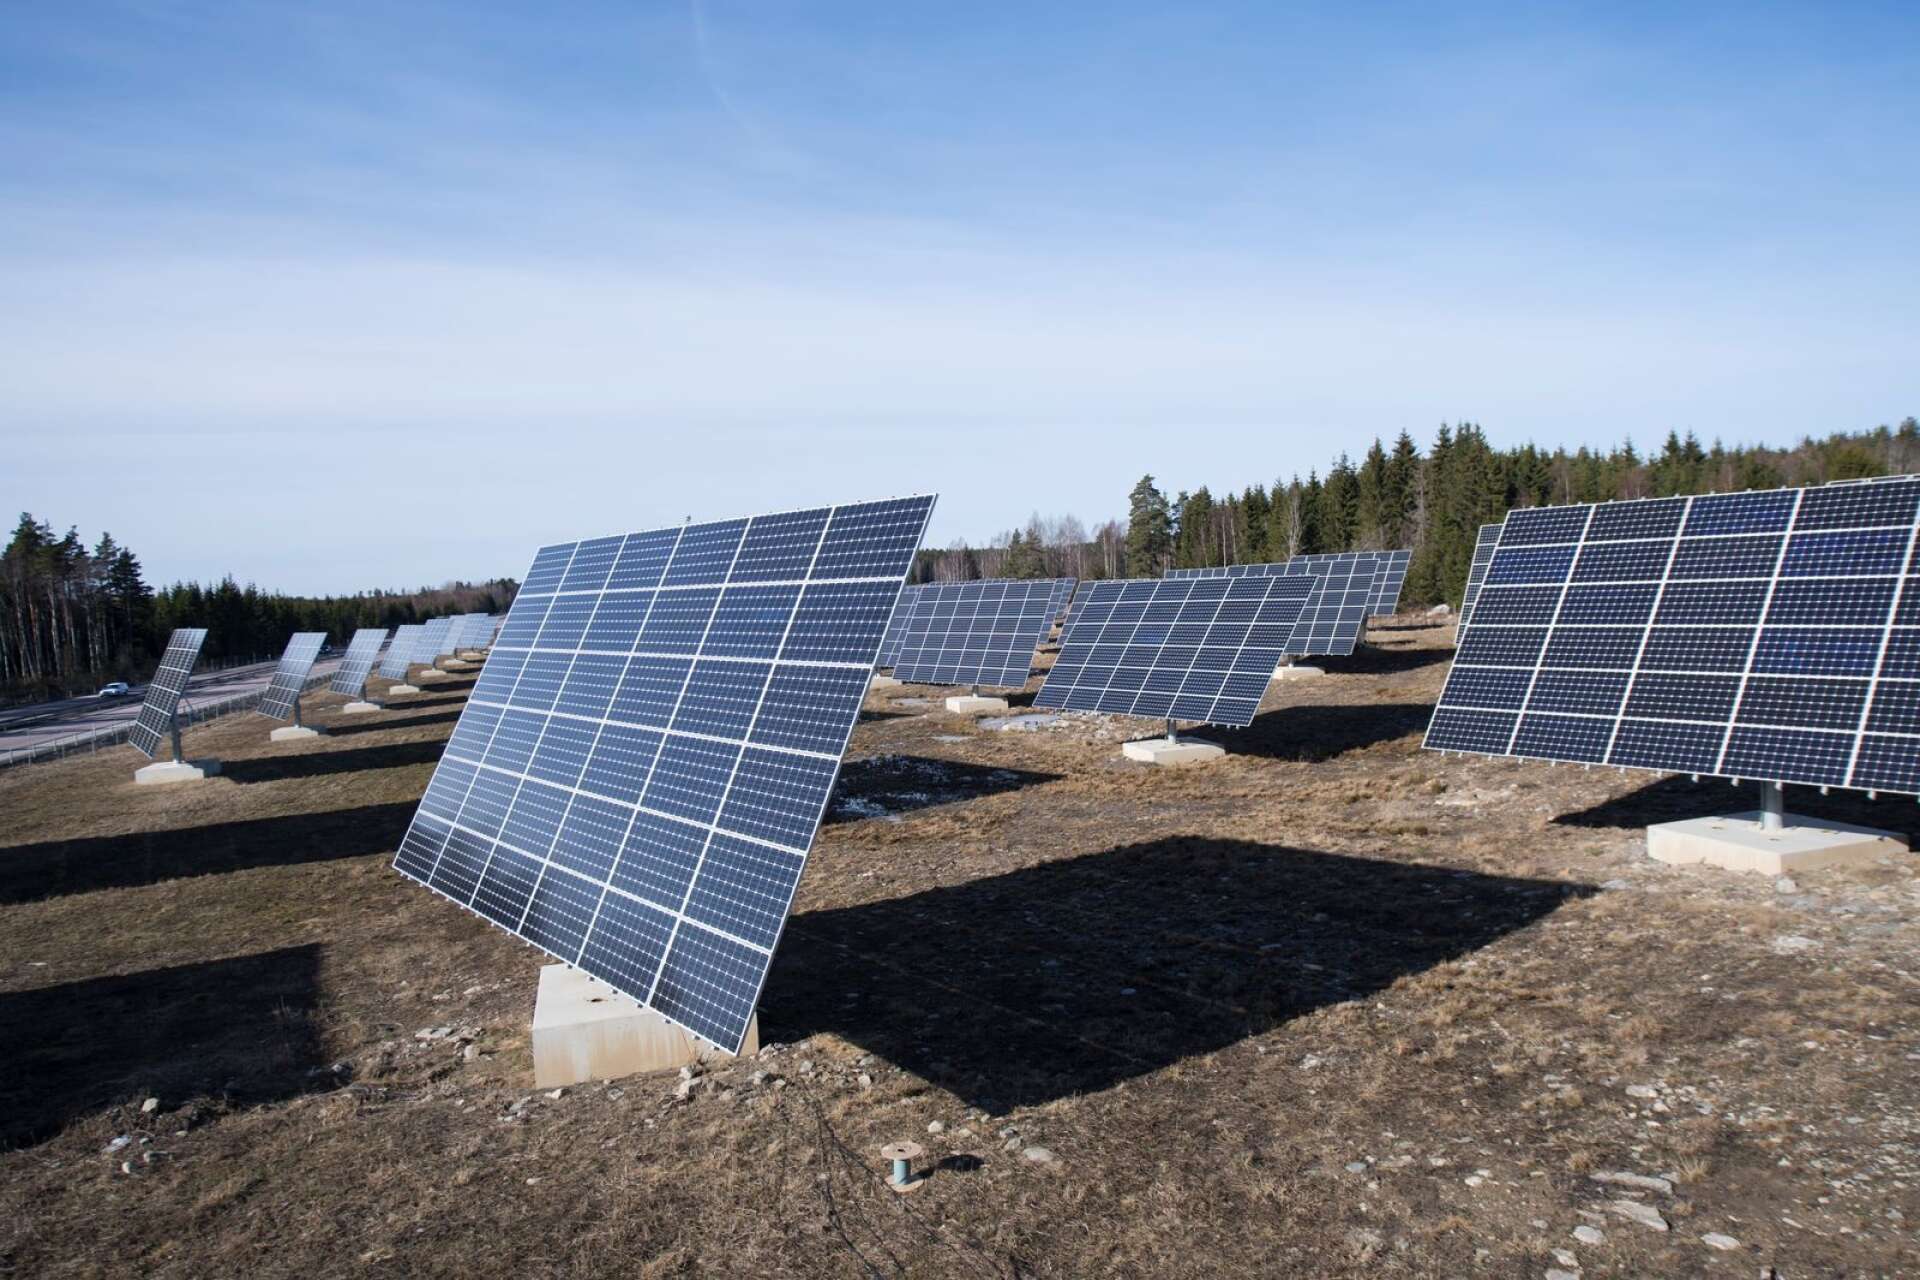 Två solcellsanläggningar planerar Karlstads energi att anlägga, en i Älvenäs och en vid Karlstads flygplats. Bilden visar en solcellspark utanför Västerås.